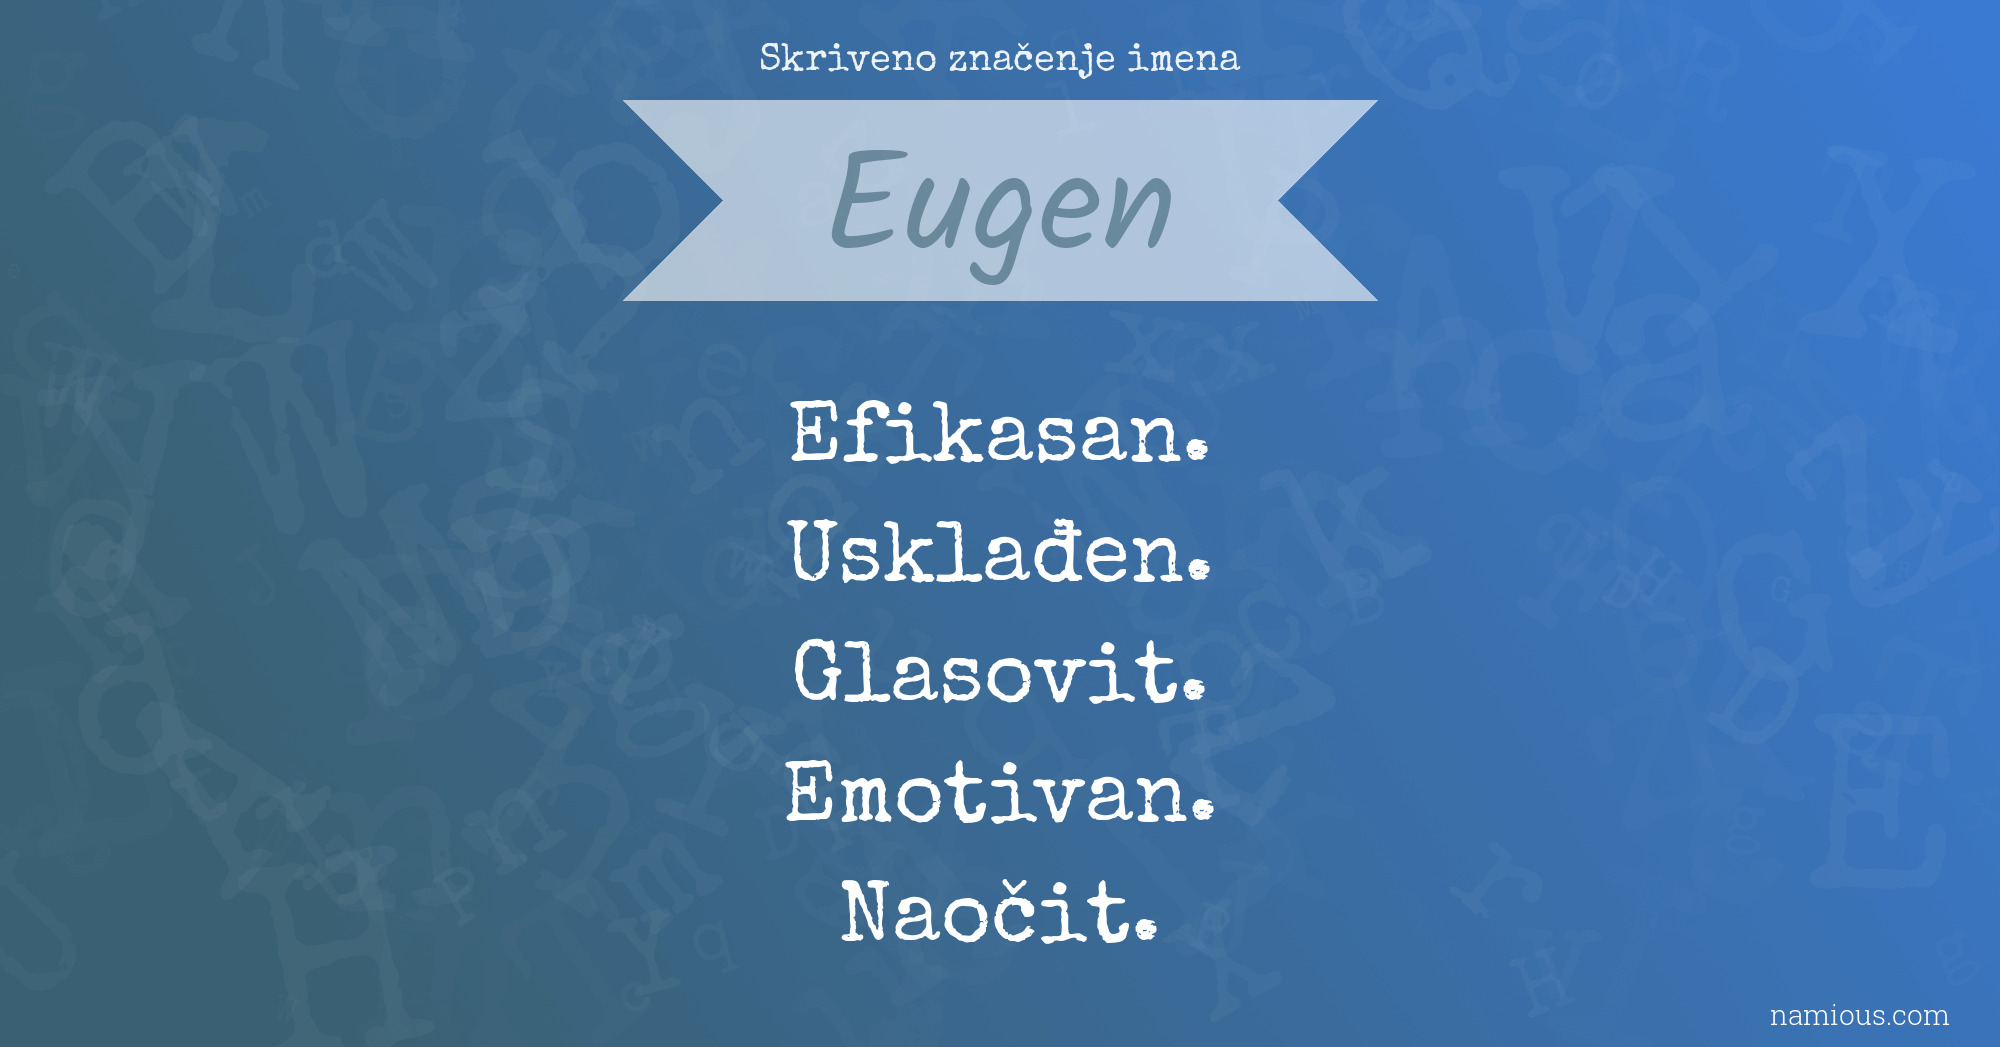 Skriveno značenje imena Eugen